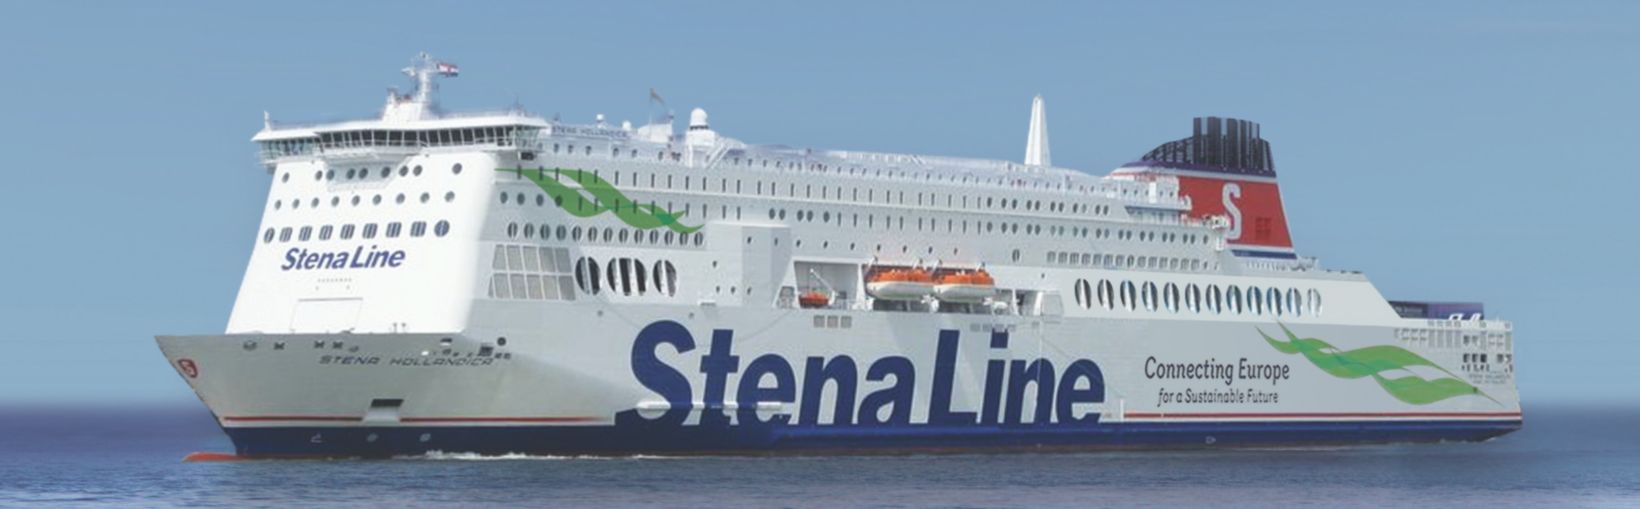 Stena Hollandica veerboot op zee                 